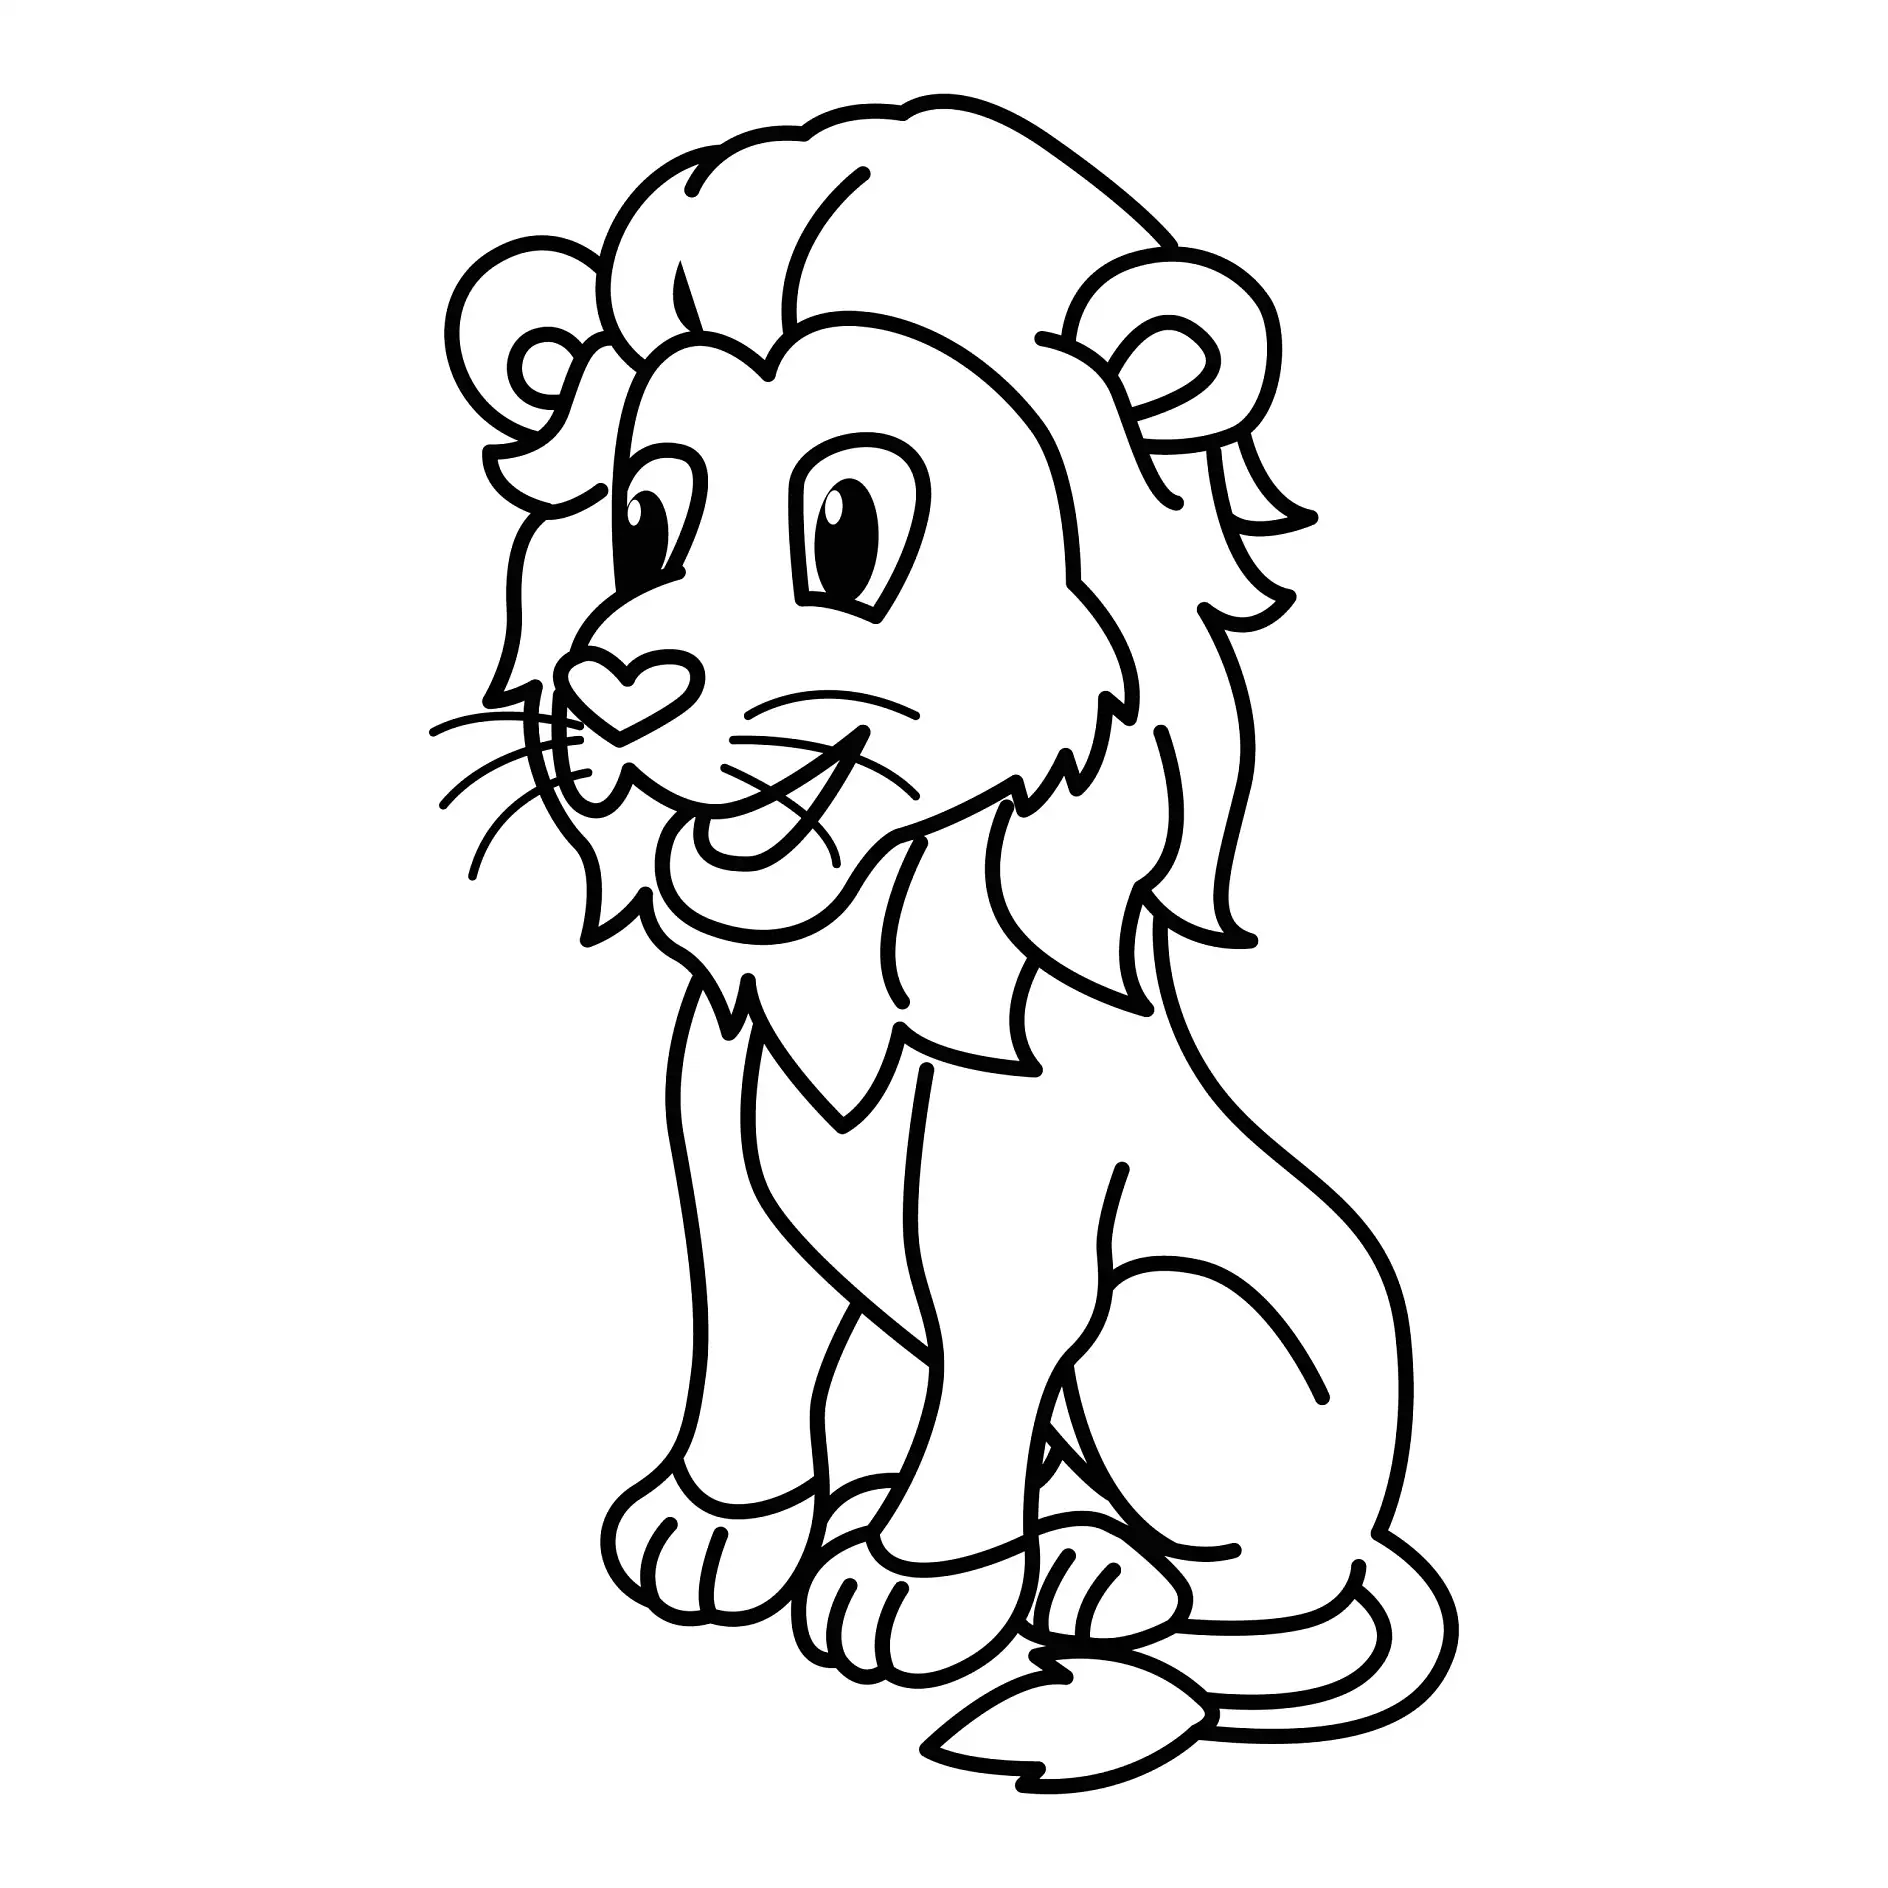 Ausmalbild Löwe sitzend mit freundlichem Gesicht